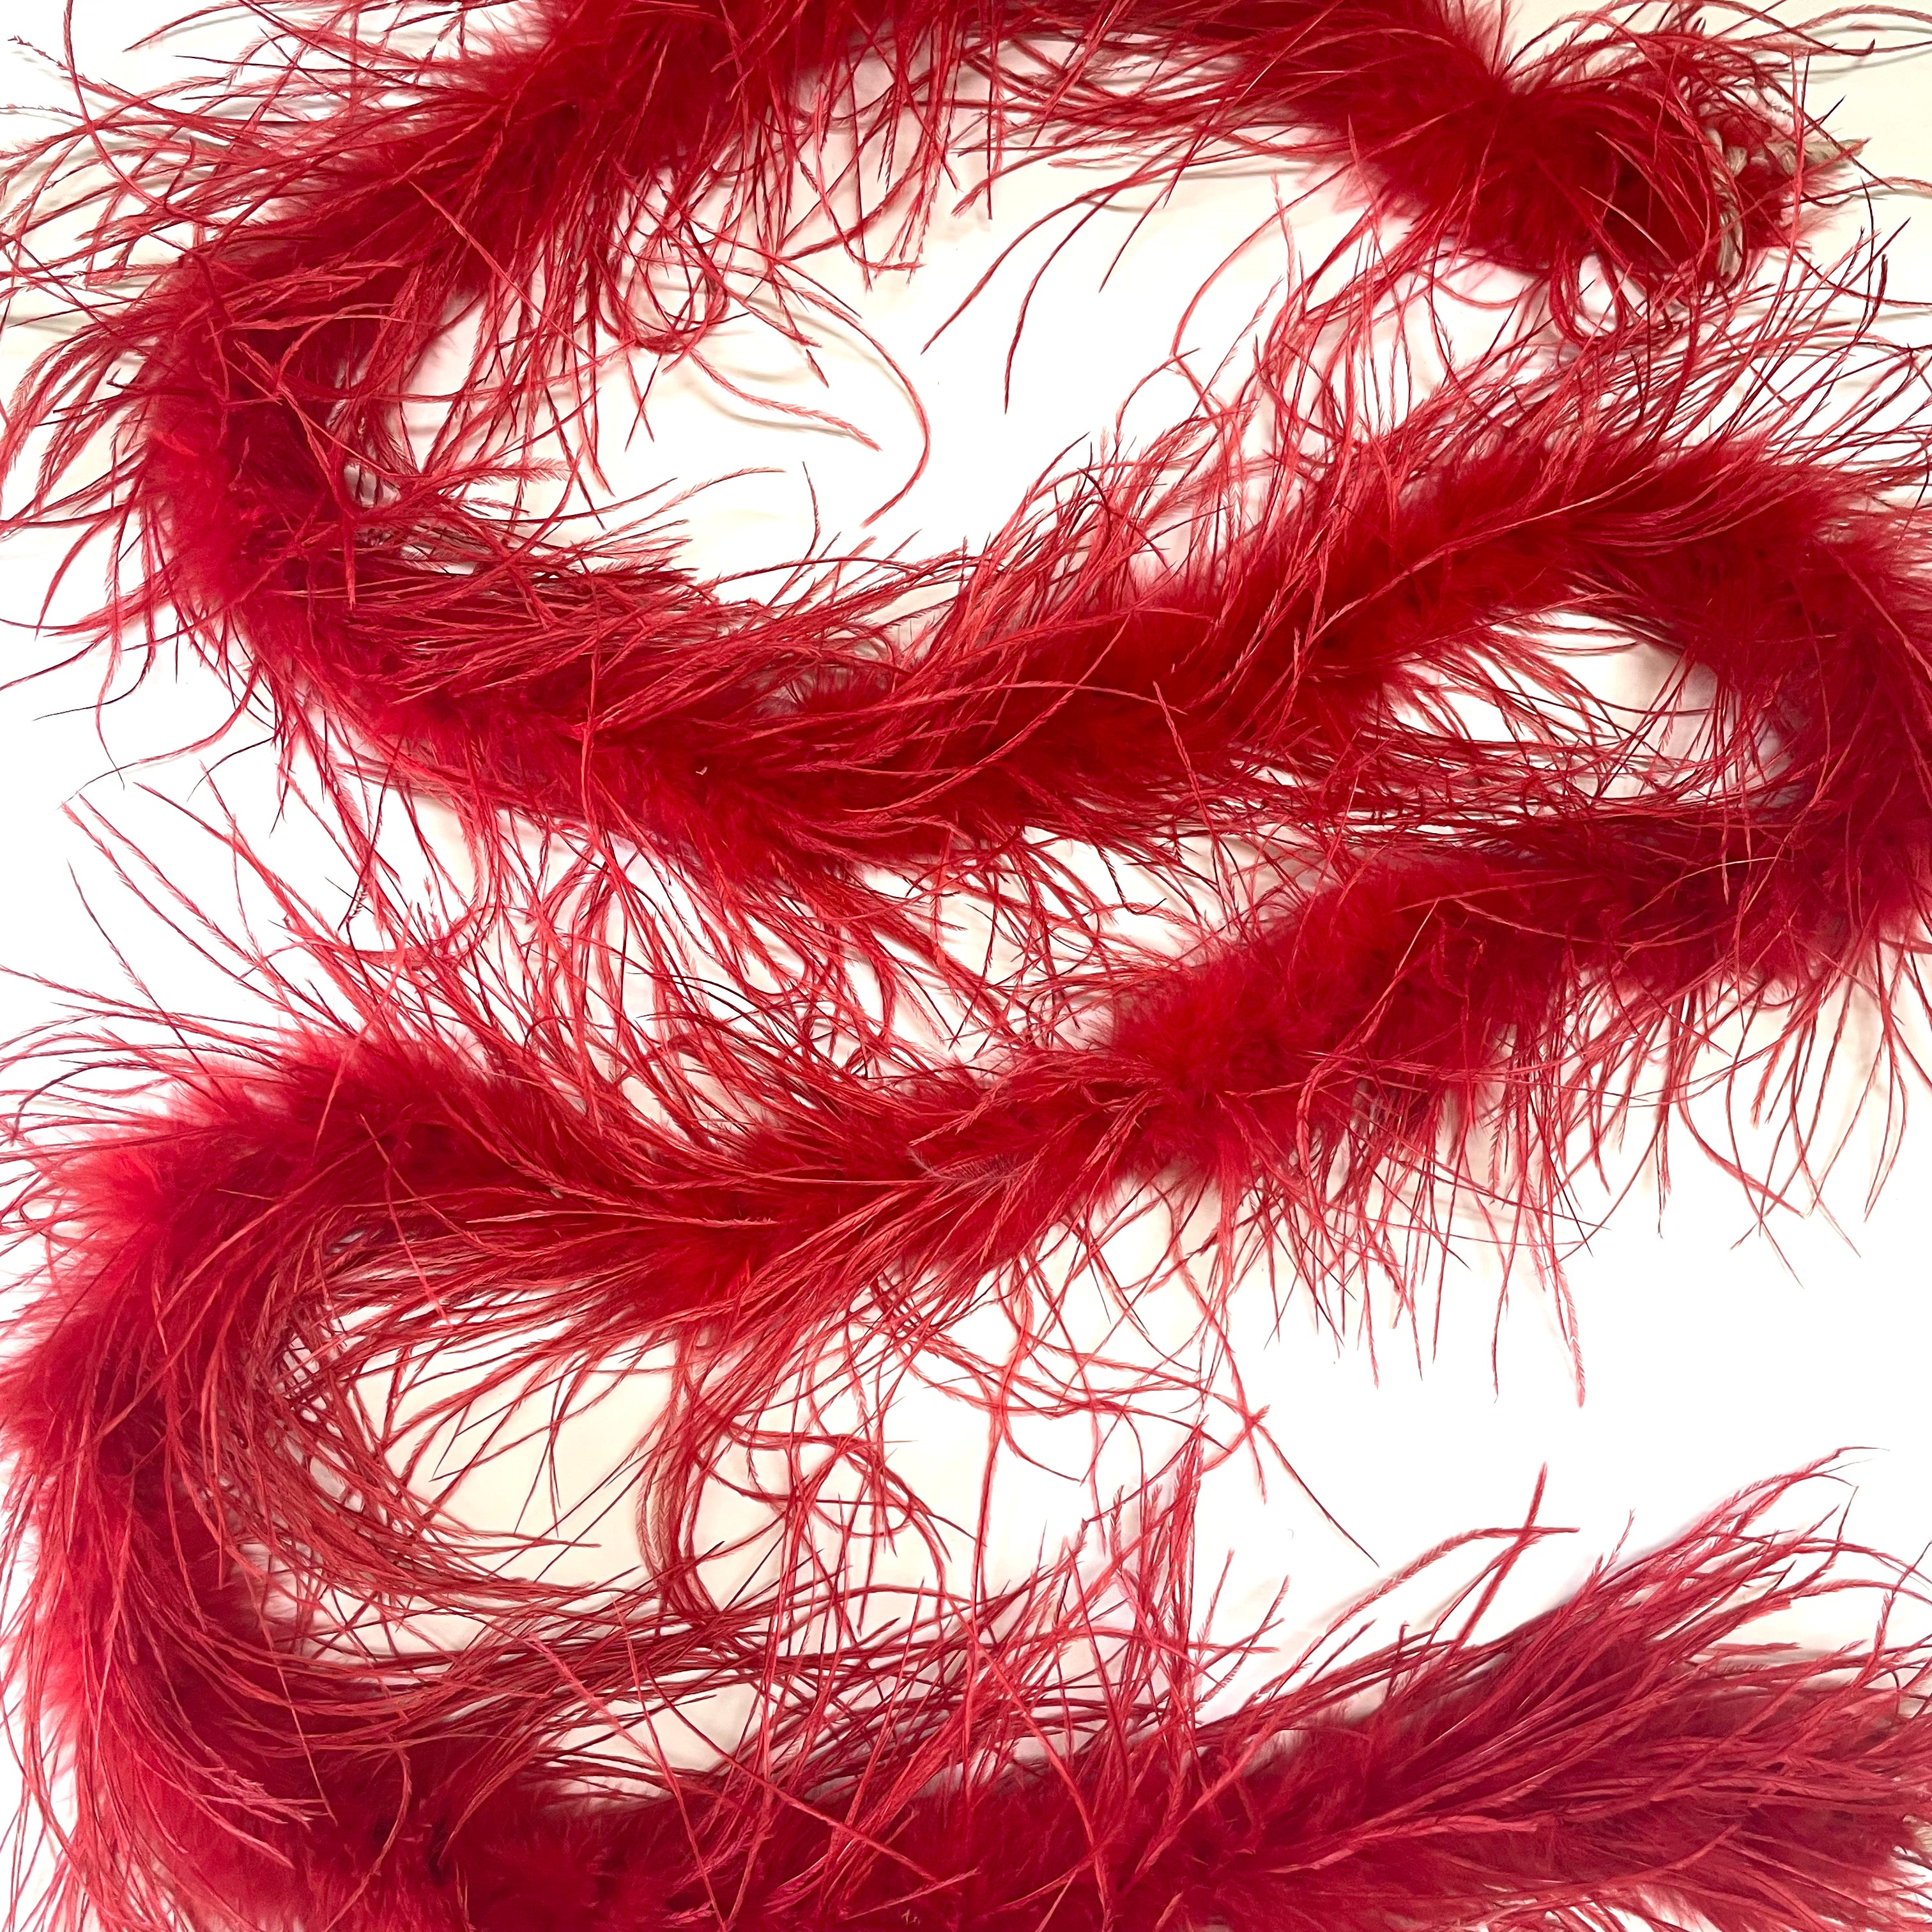 Ostrich & Marabou Feather Boa Trim per 10cm - Red